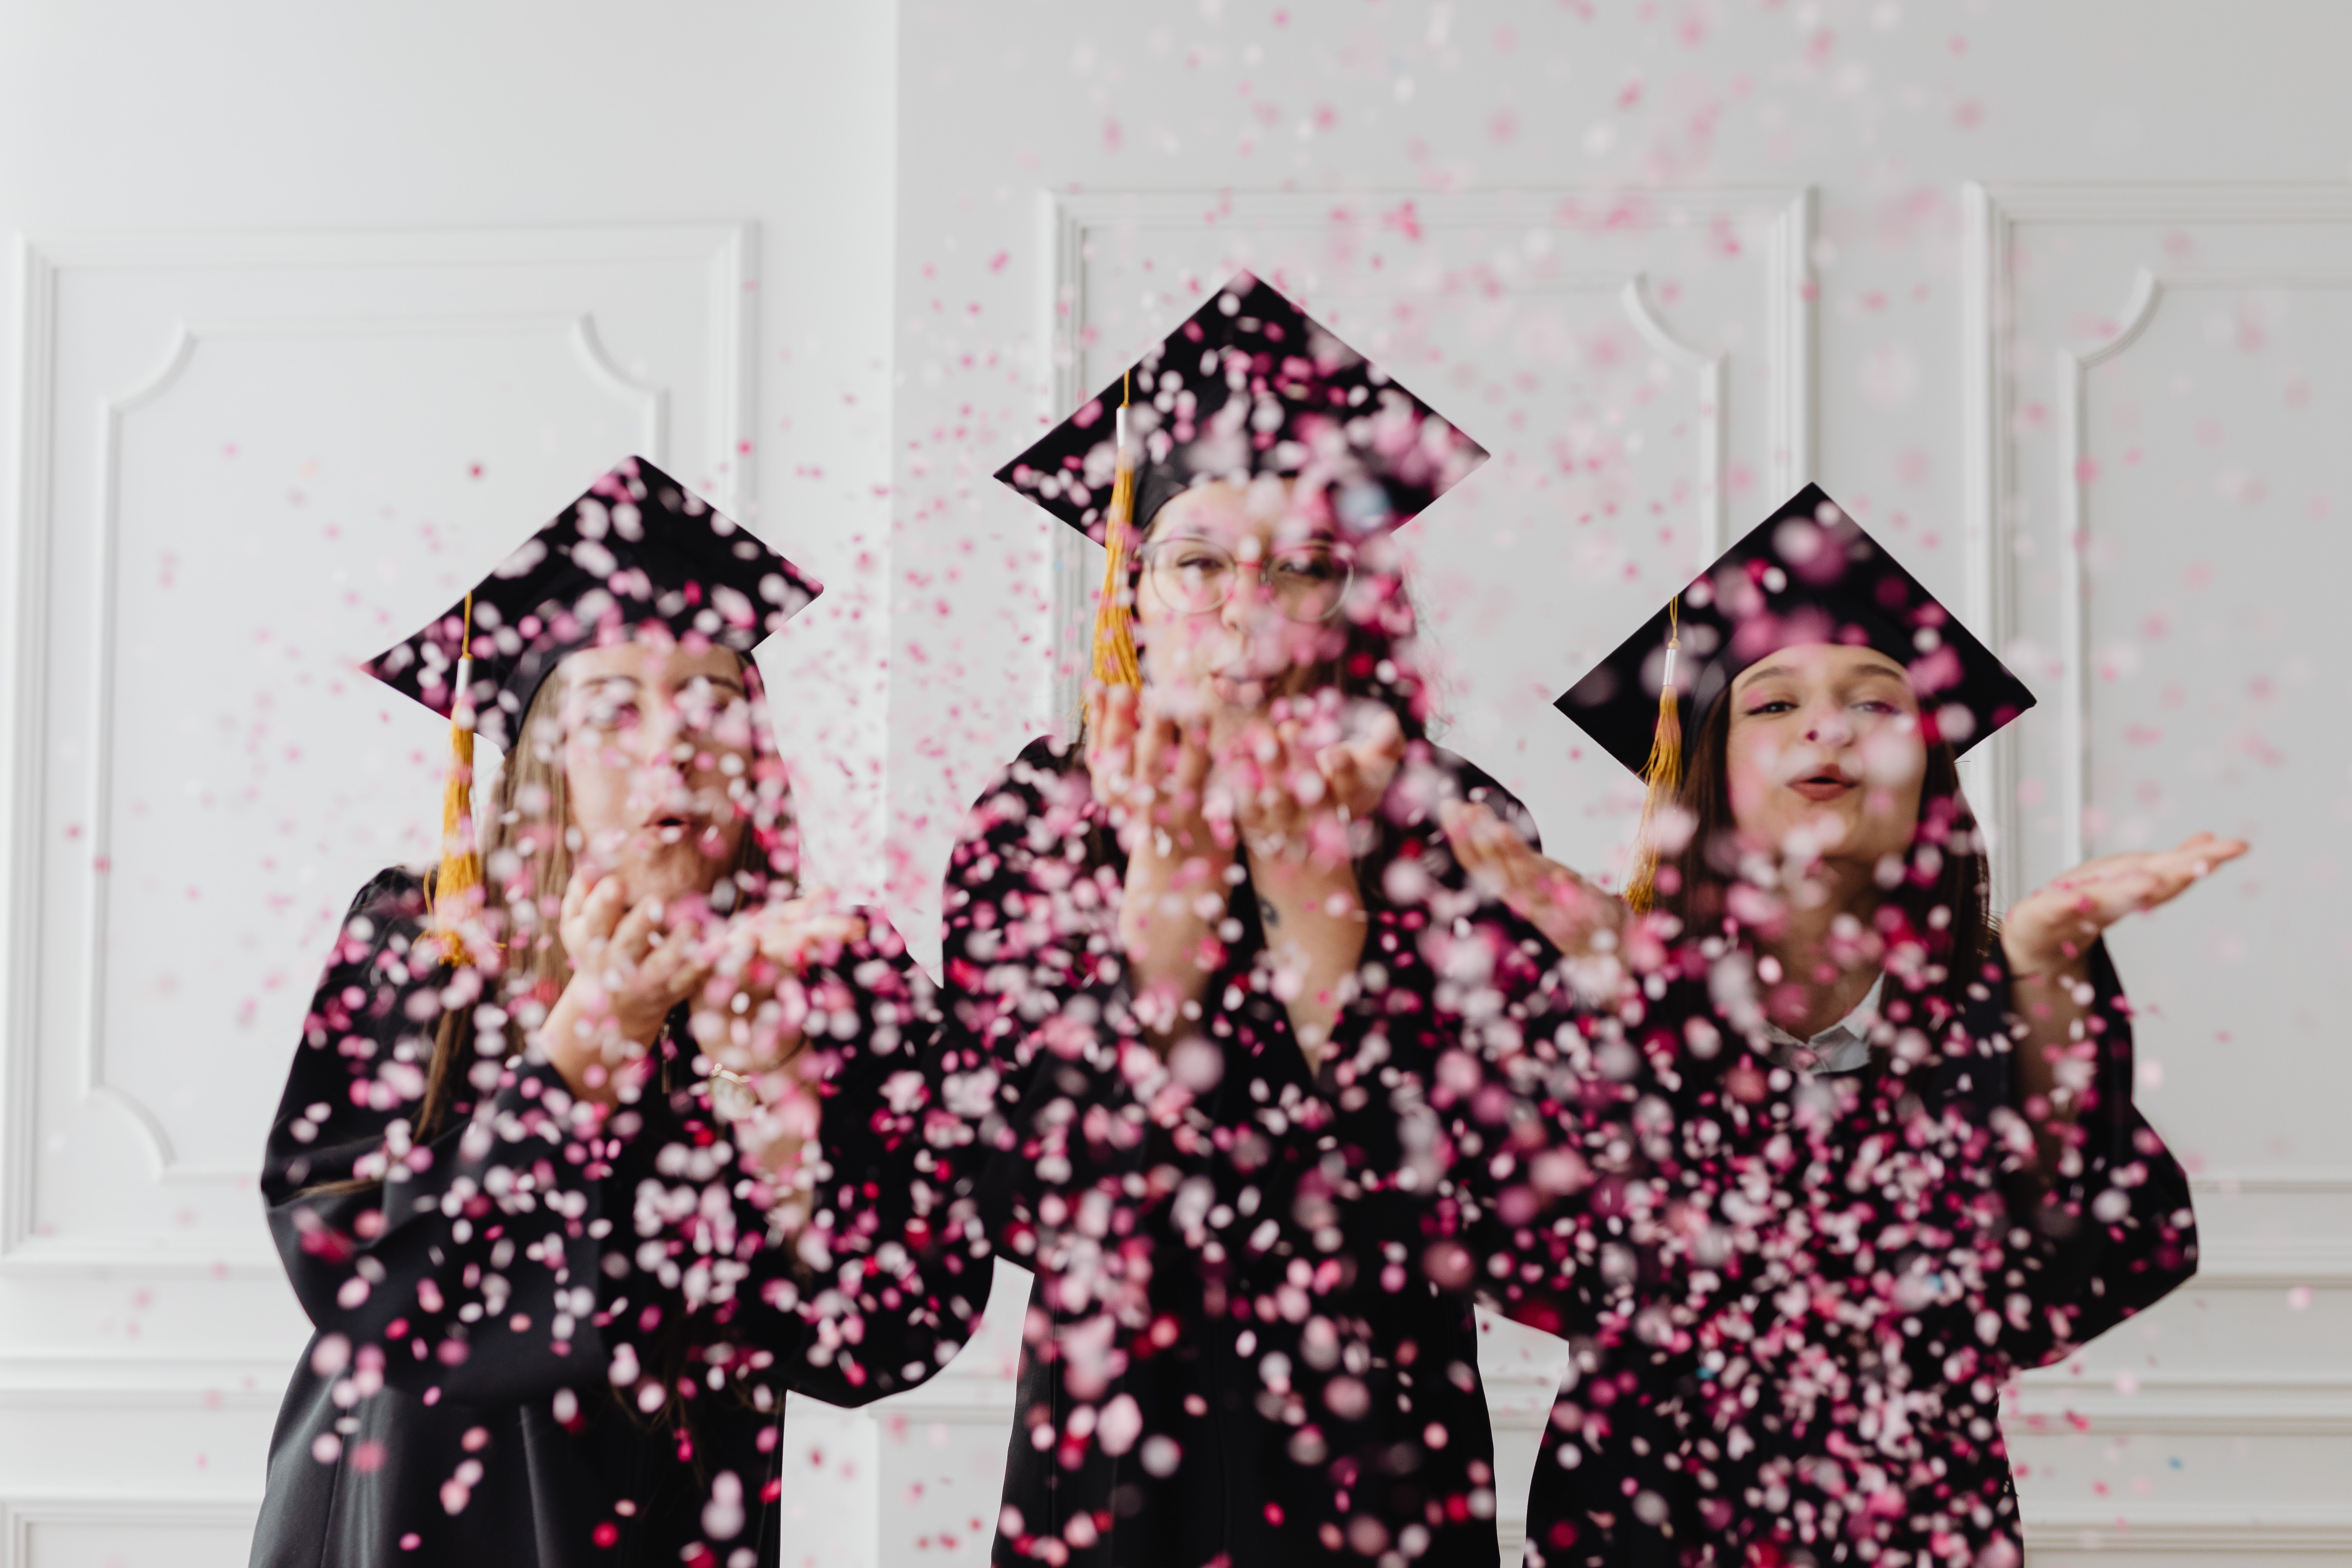 dziewczyny w togach i różowe confetti.jpg